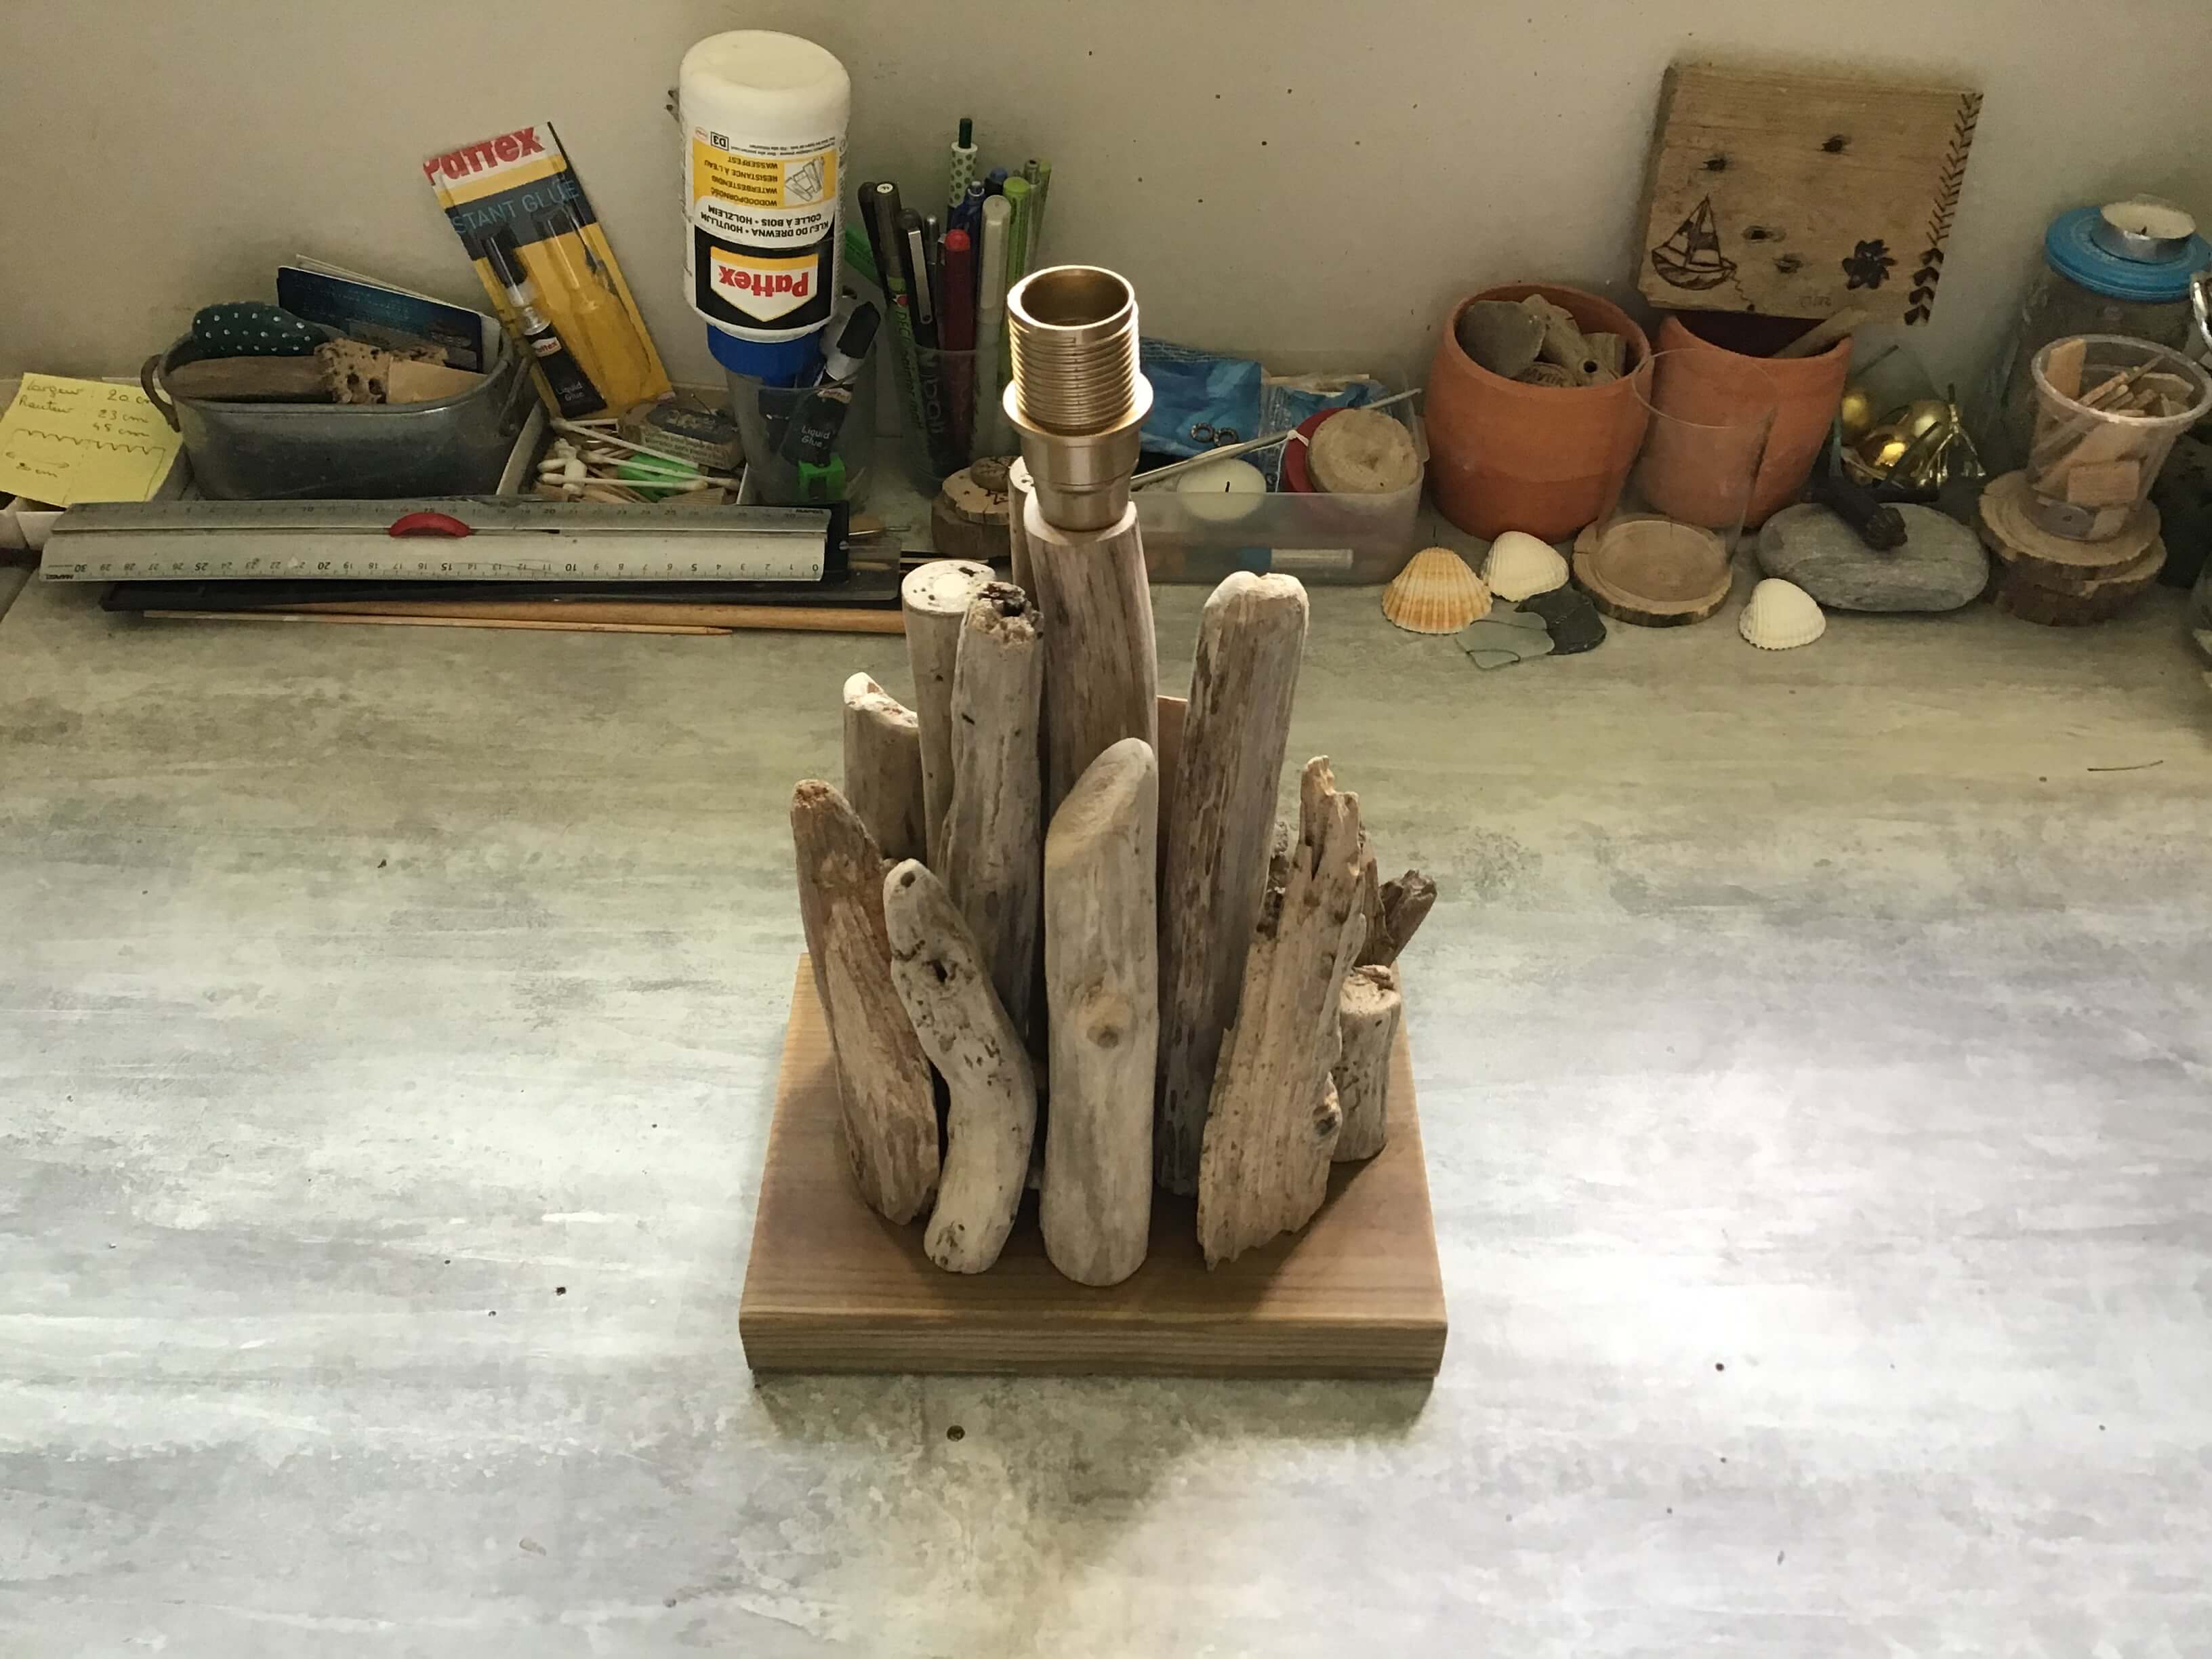 DIY faire une lampe soi-même - Modèle en bois flotté #1